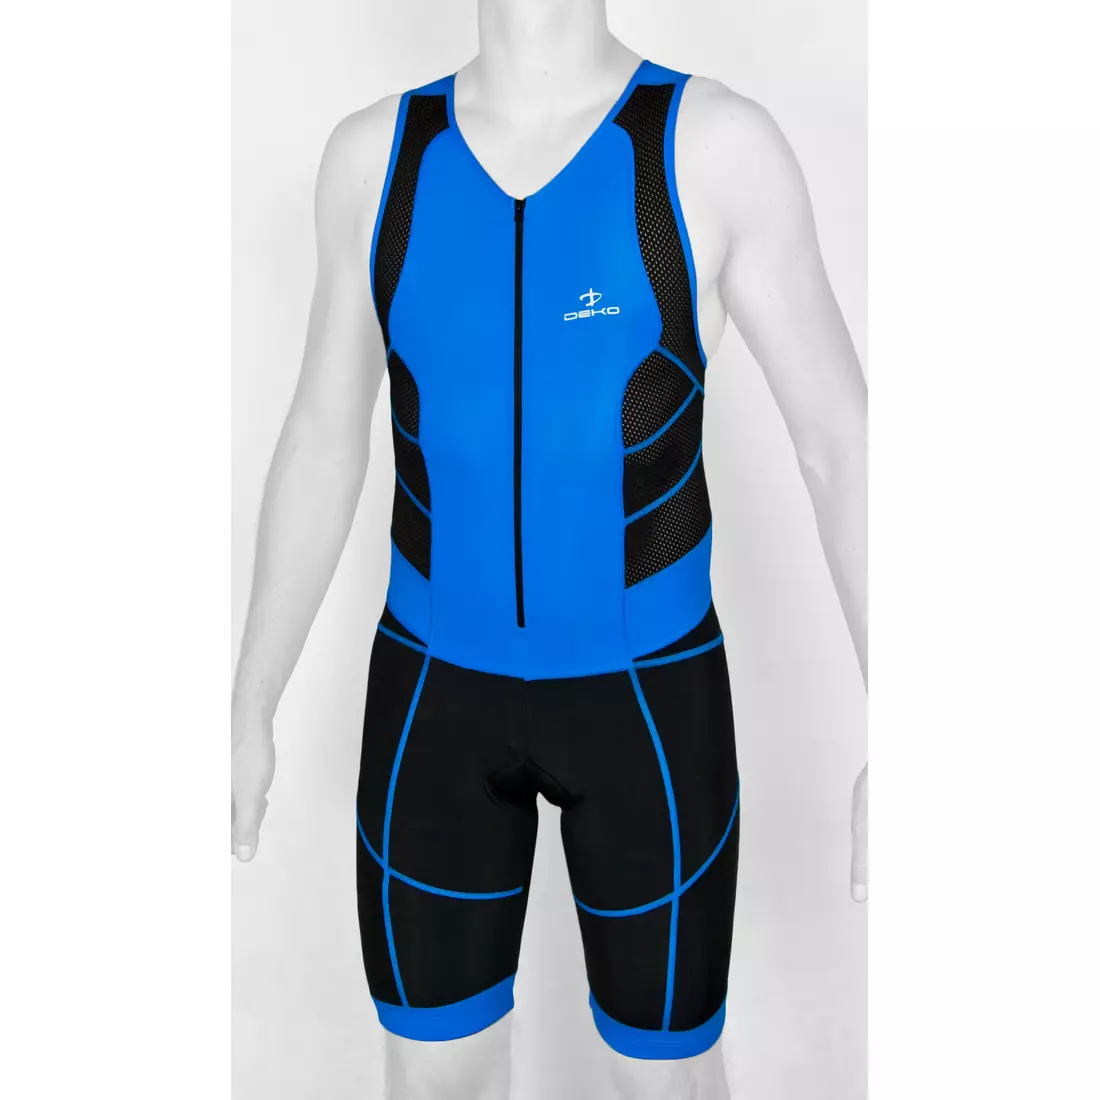 DEKO TRST-203 men's triathlon suit, black and blue